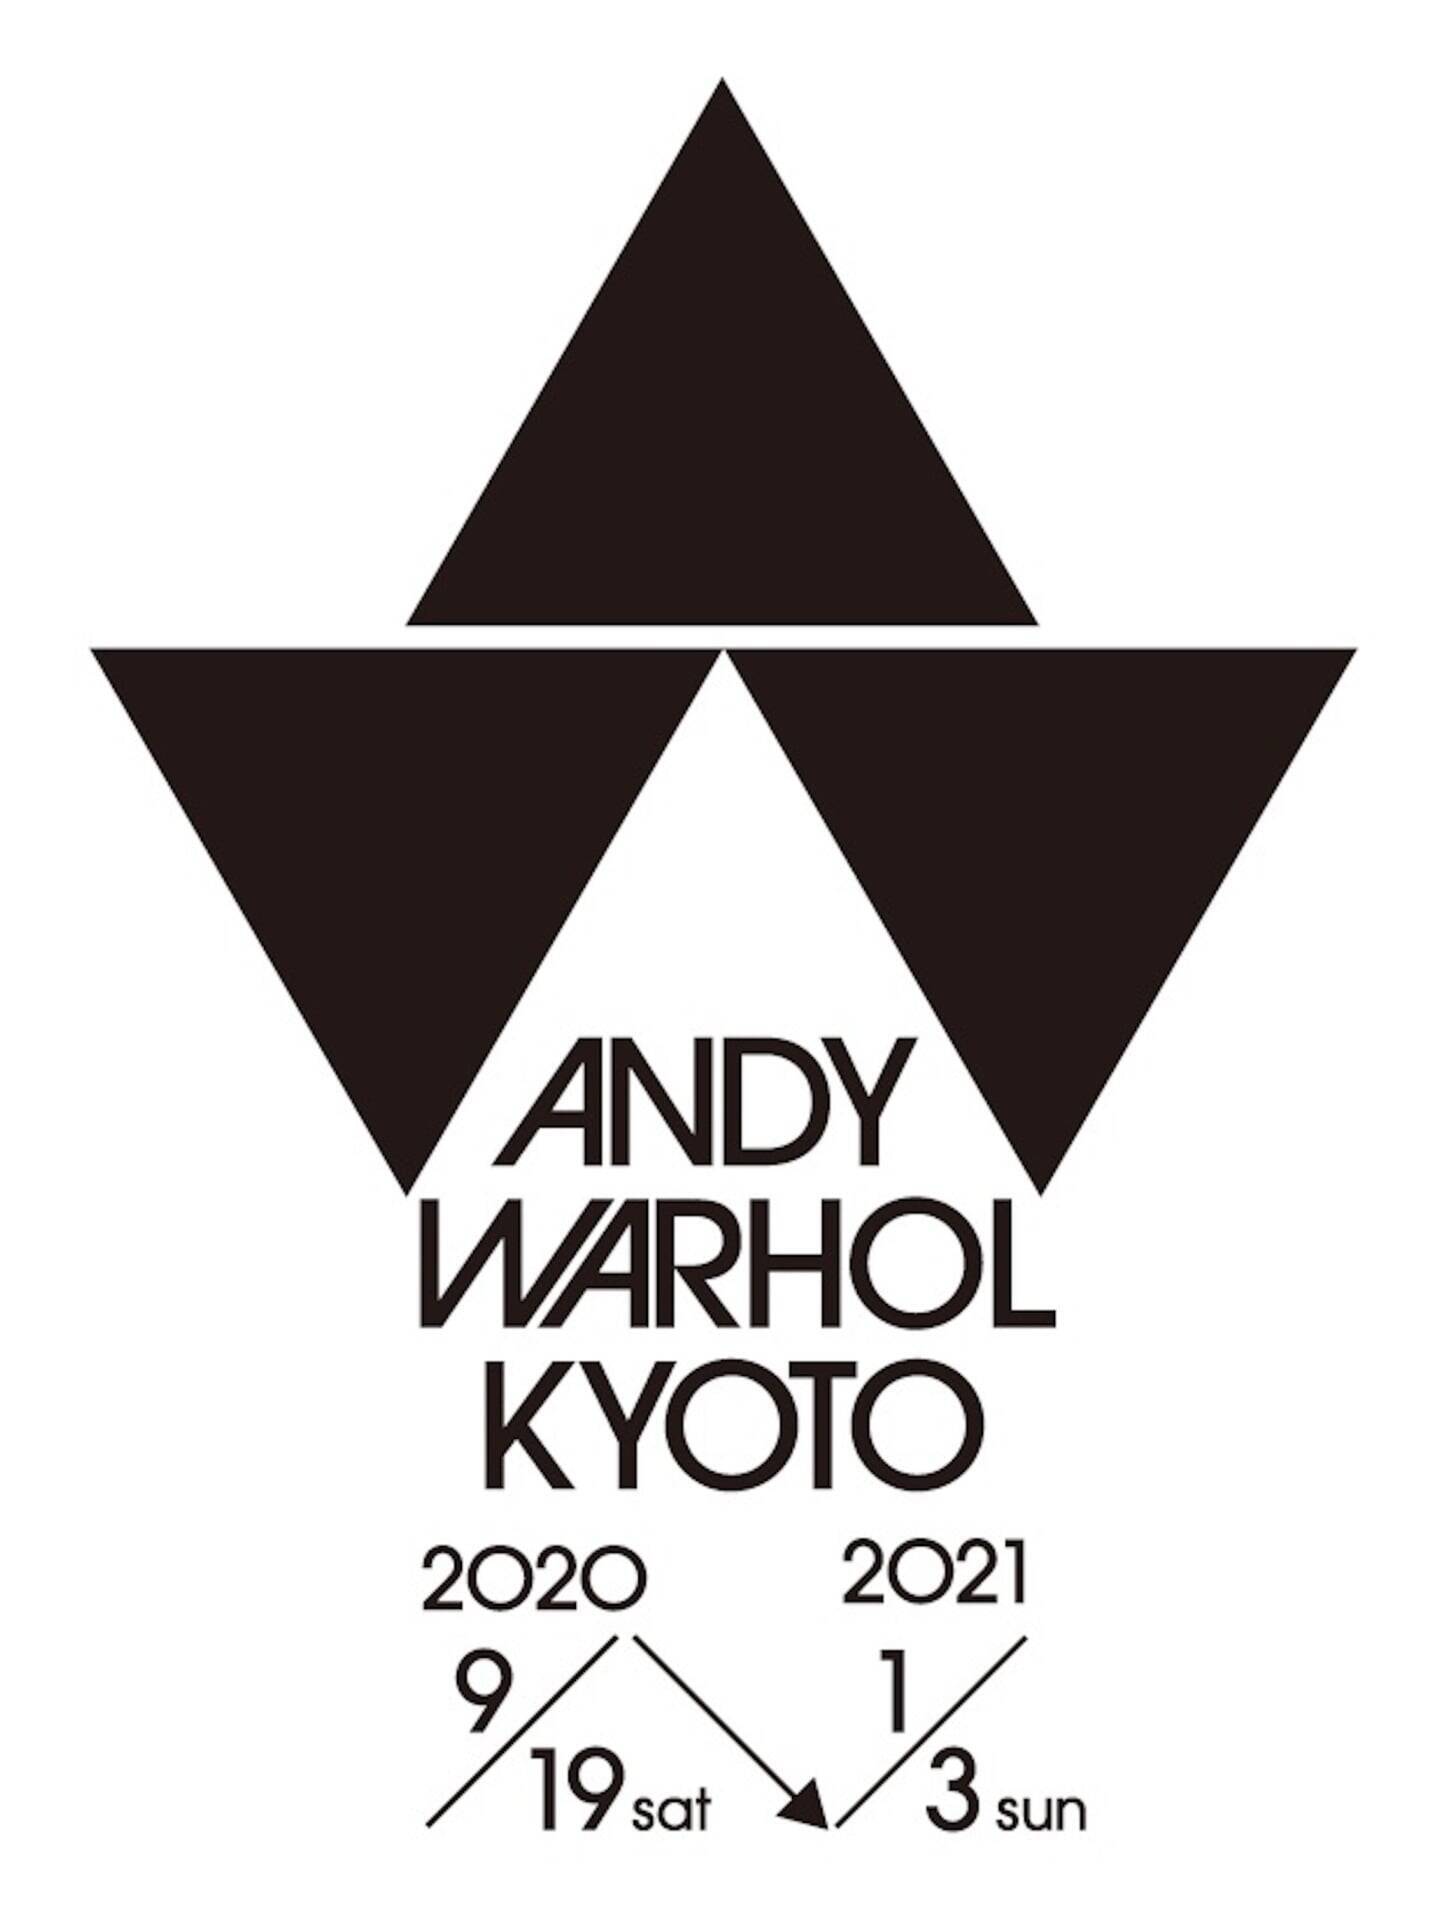 アンディ ウォーホルの大回顧展 Andy Warhol Kyoto アンディ ウォーホル キョウト 年秋より京都にて単独開催決定 19年8月28日 エキサイトニュース